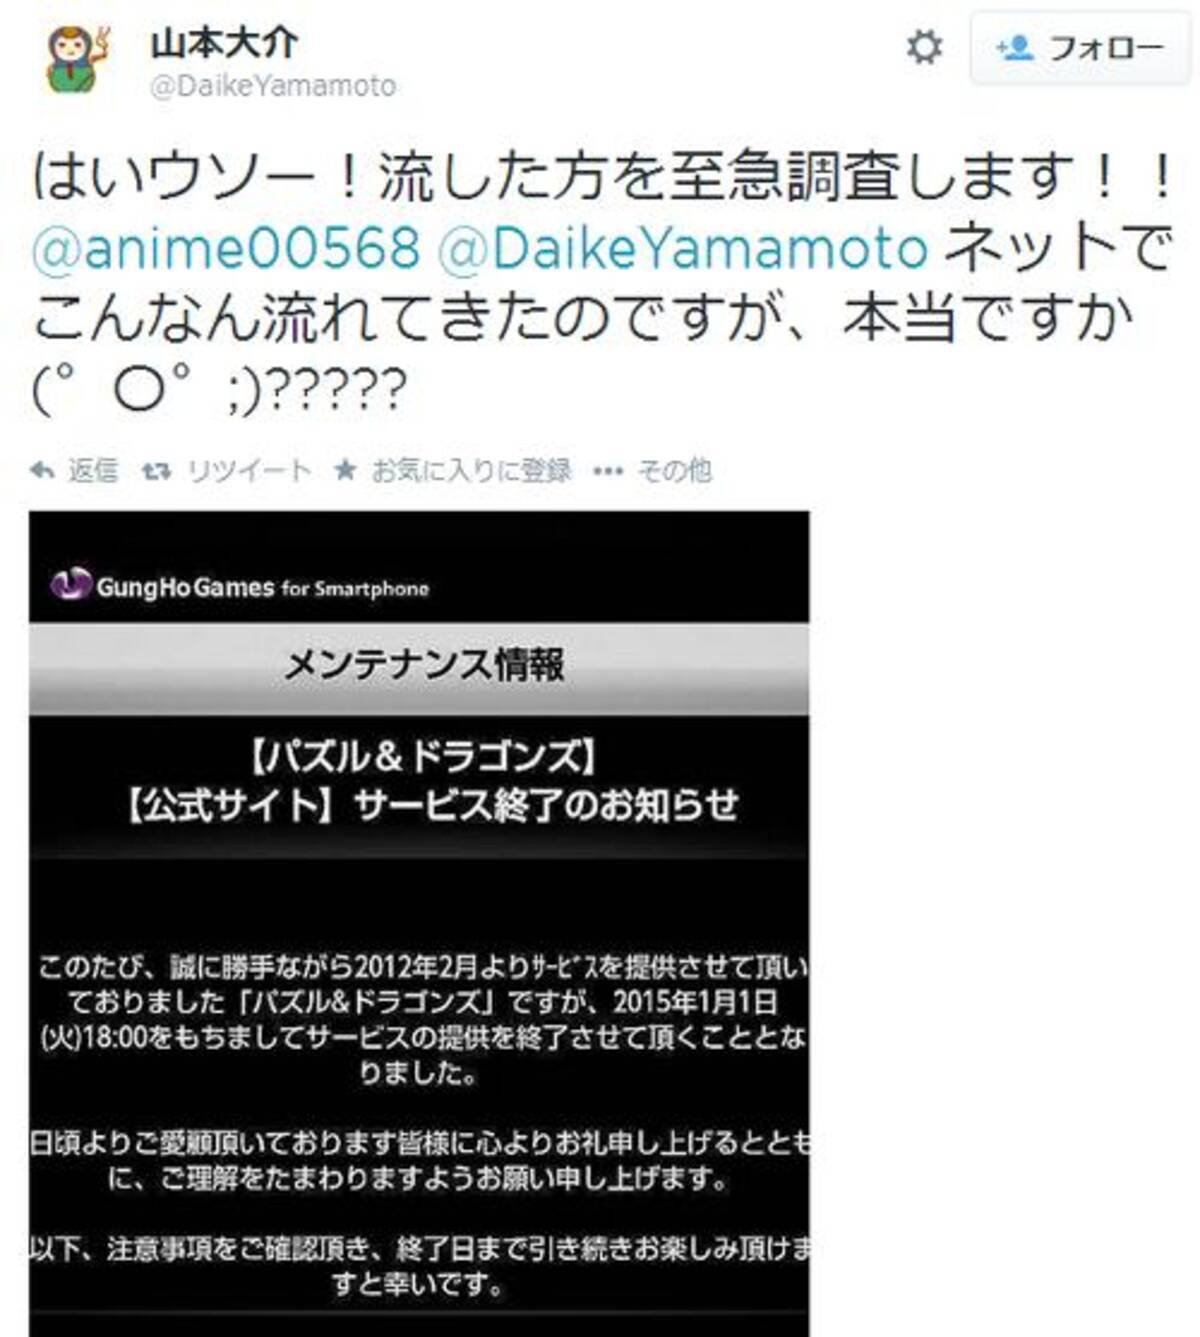 パズドラサービス終了のデマが流れる プロデューサーの山本大介氏は否定し流布した人を調査すると宣言 14年6月日 エキサイトニュース